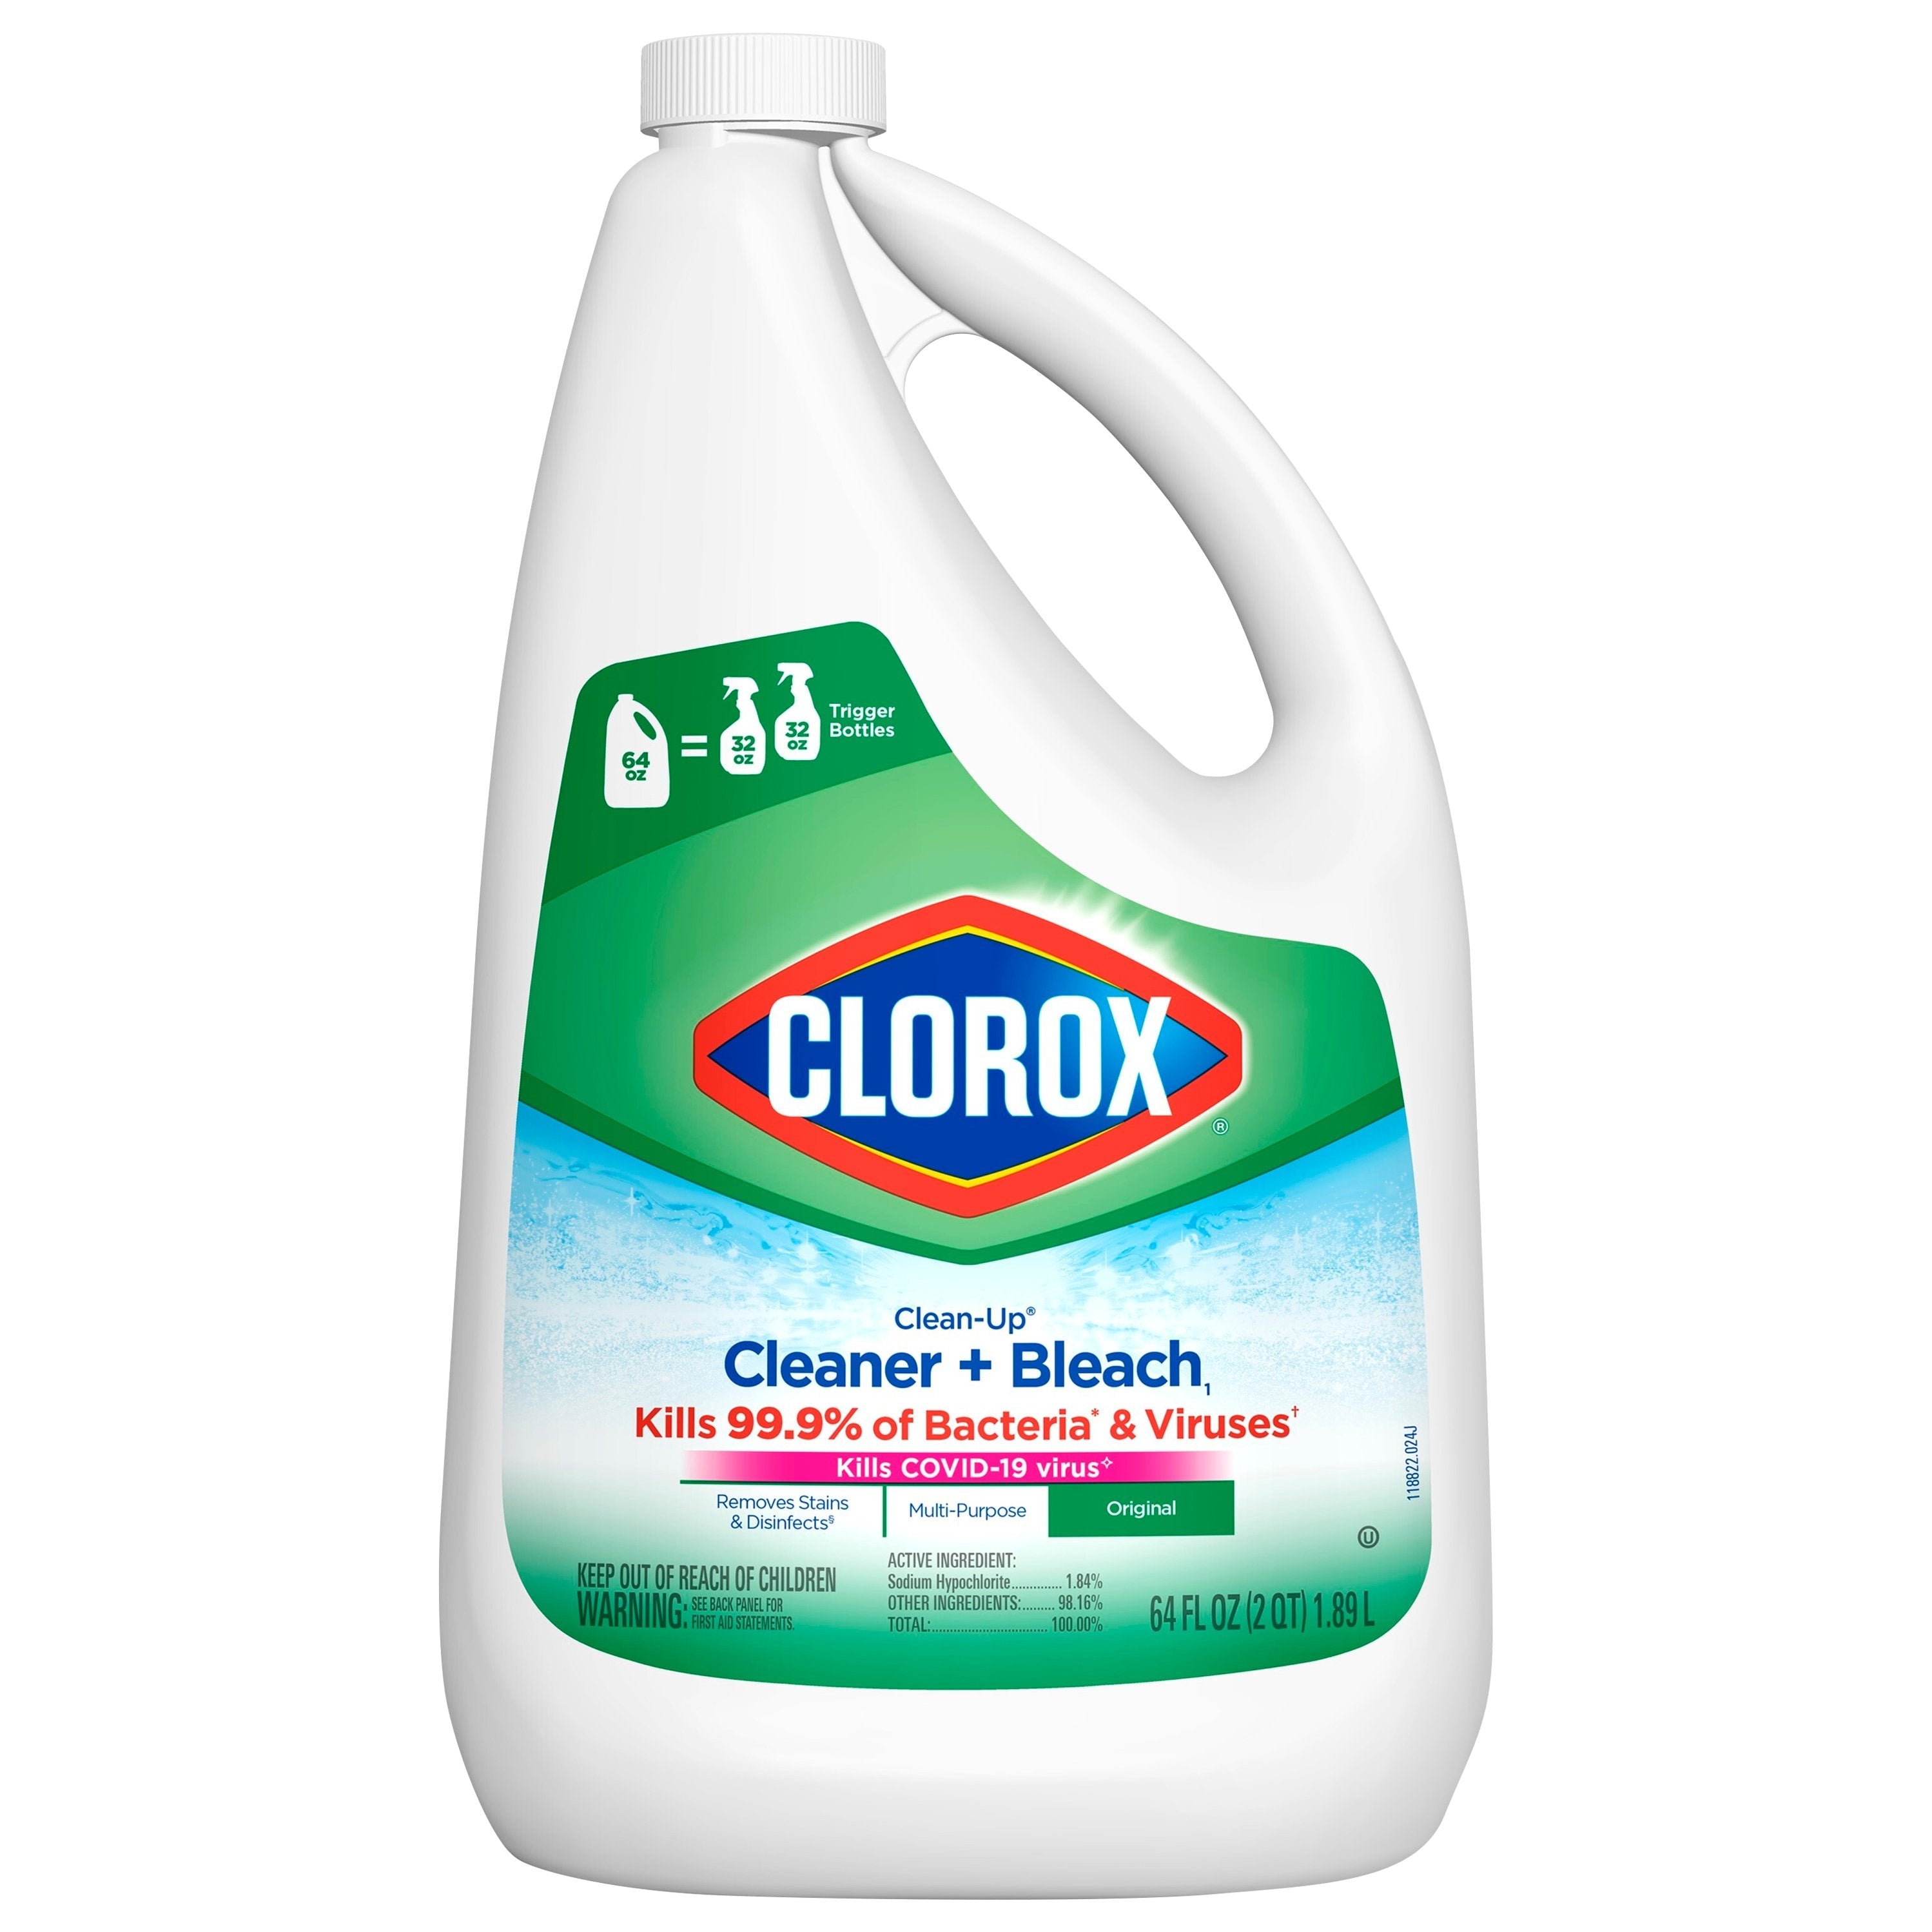 Clorox Oxi Magic Multi-Purpose Stain Remover for sale online